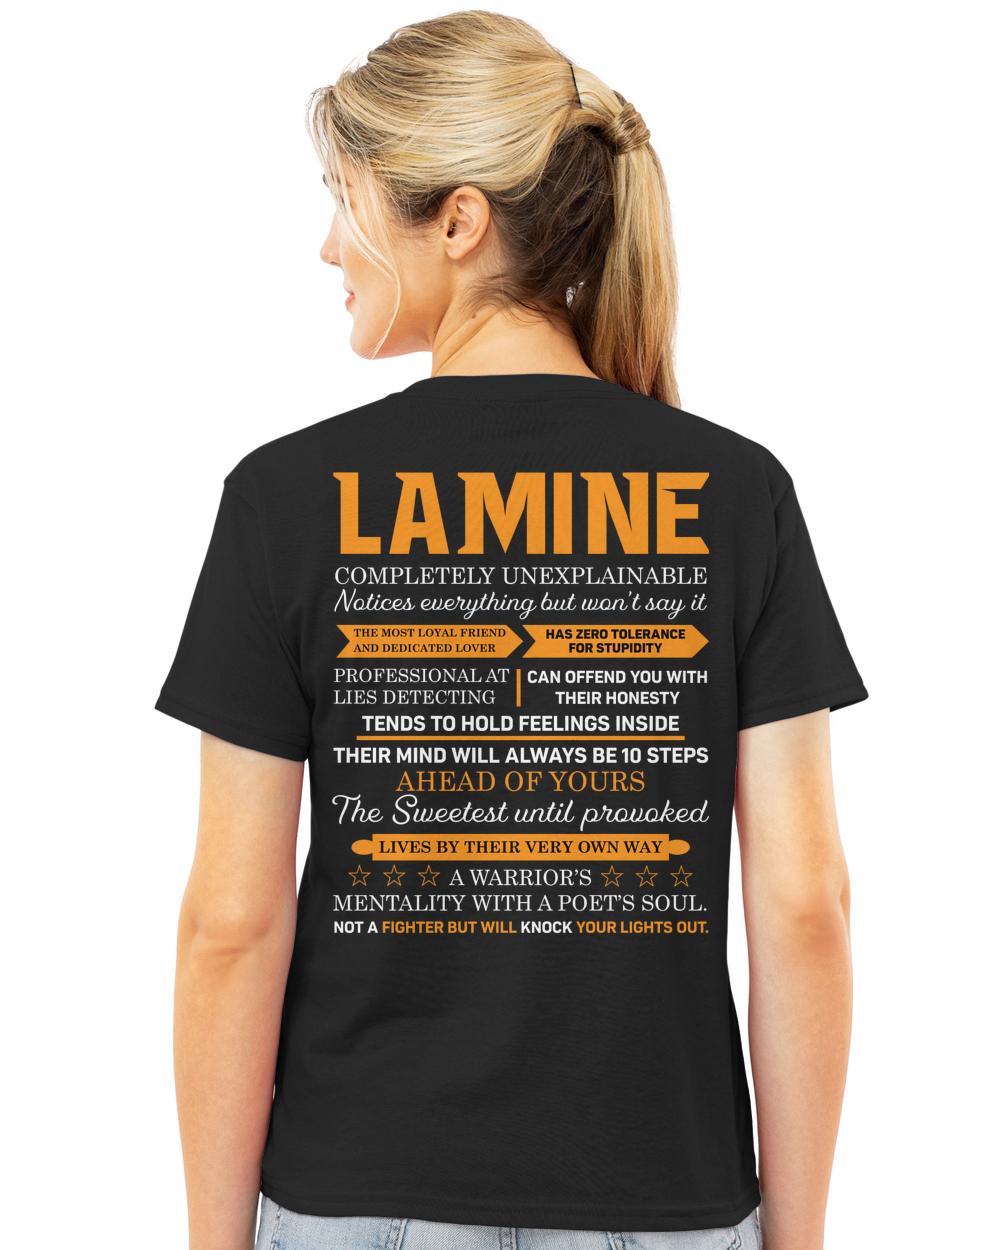 LAMINE-13K-N1-01